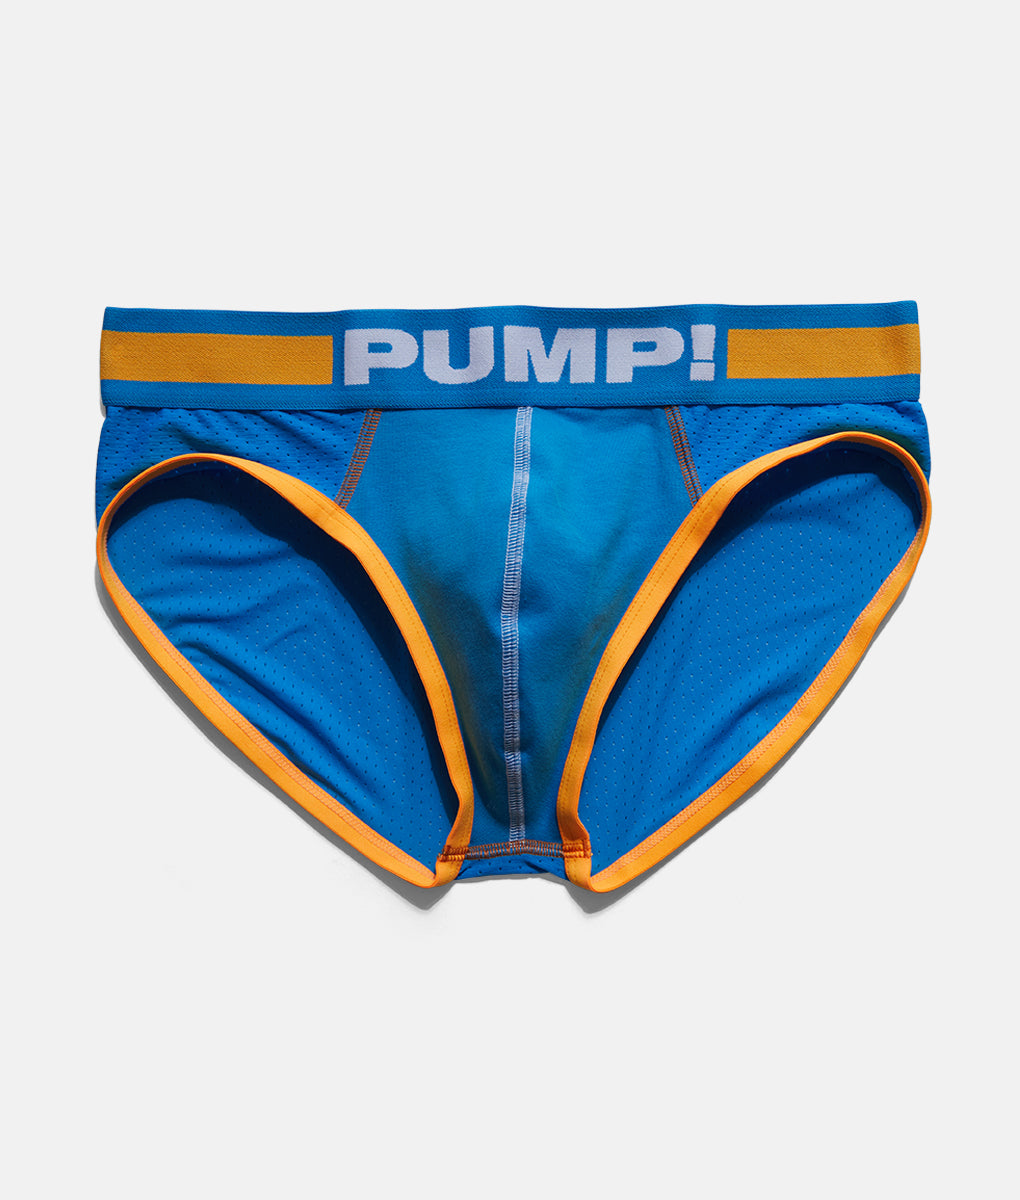 PUMP! Cruise Brief - Underwear Expert